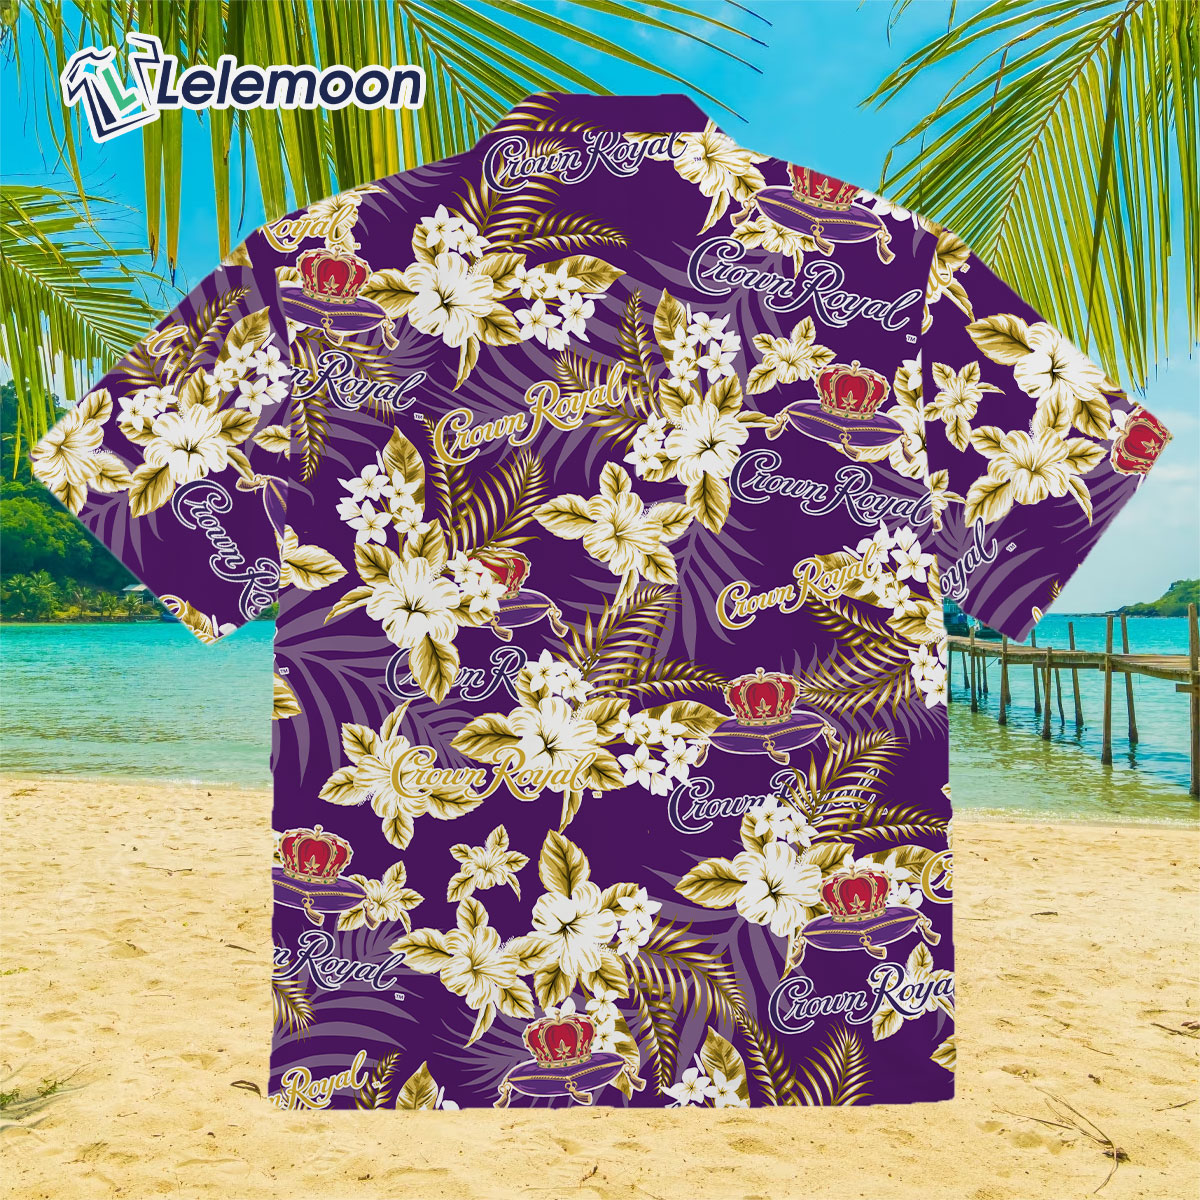 royals hawaiian shirt